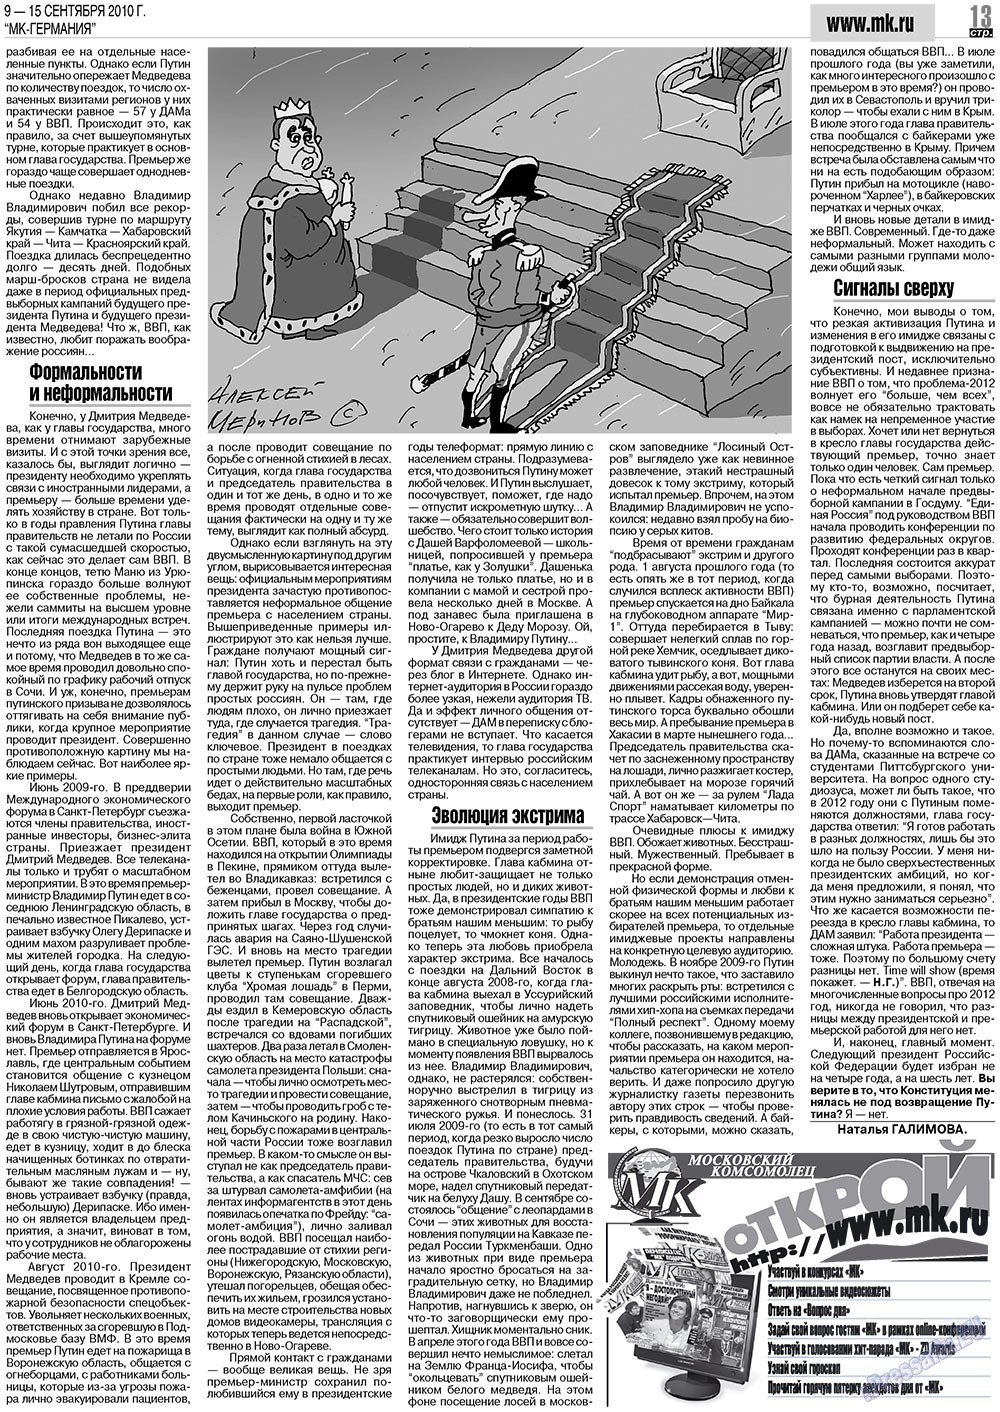 МК-Германия (газета). 2010 год, номер 37, стр. 13